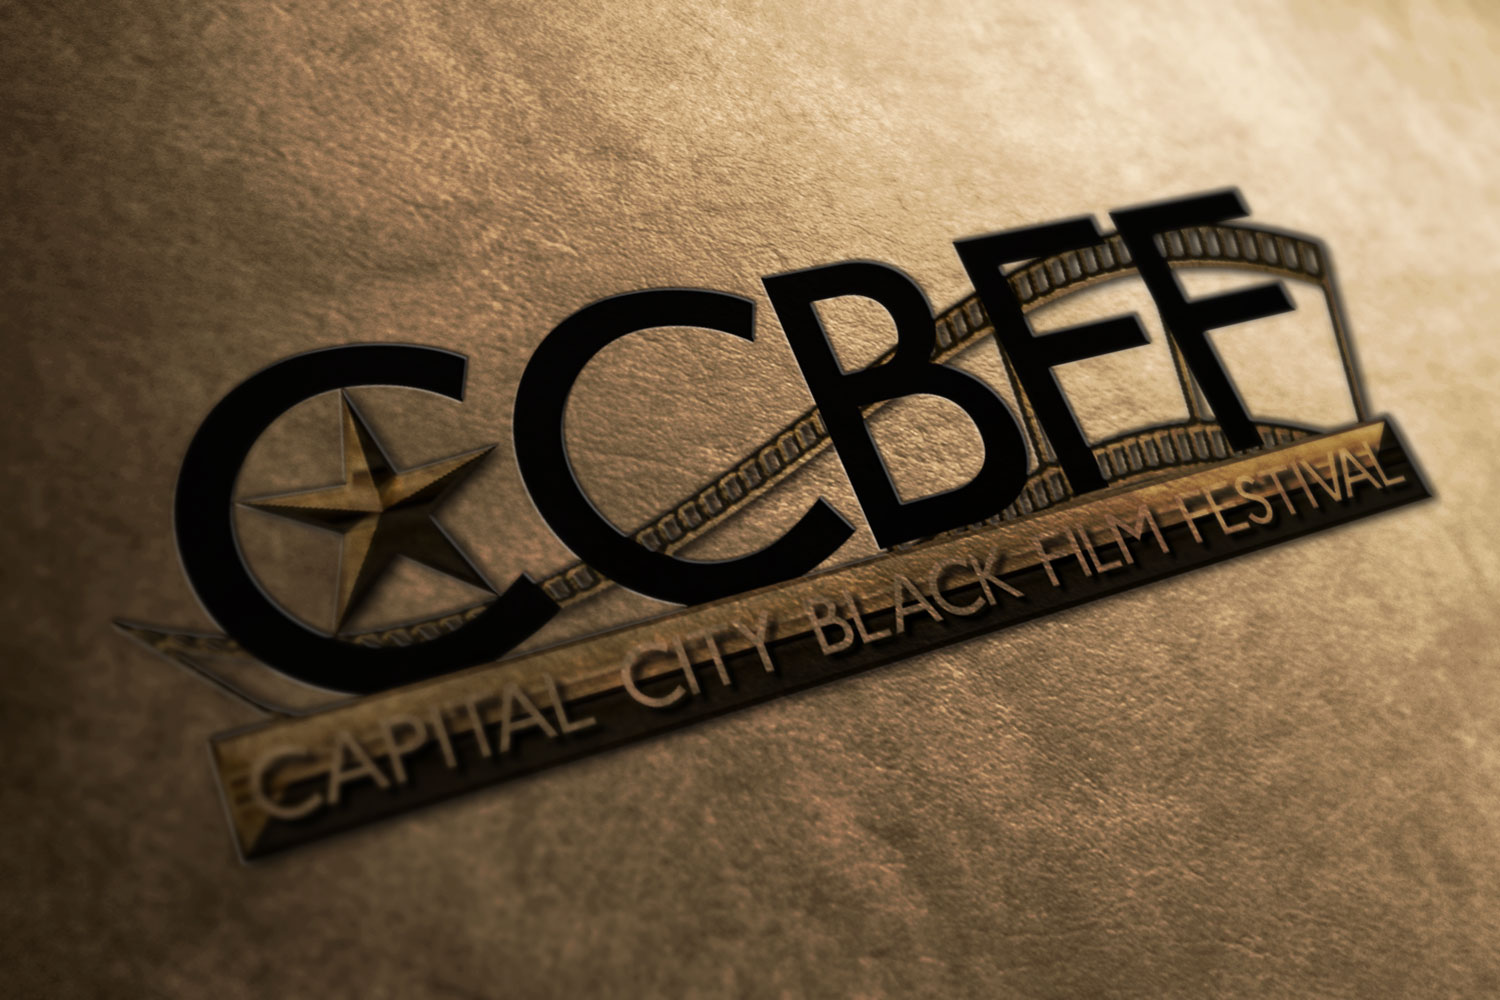 Capital City Black Film Festival - Austin, Texas - September 26 - 28, 2013